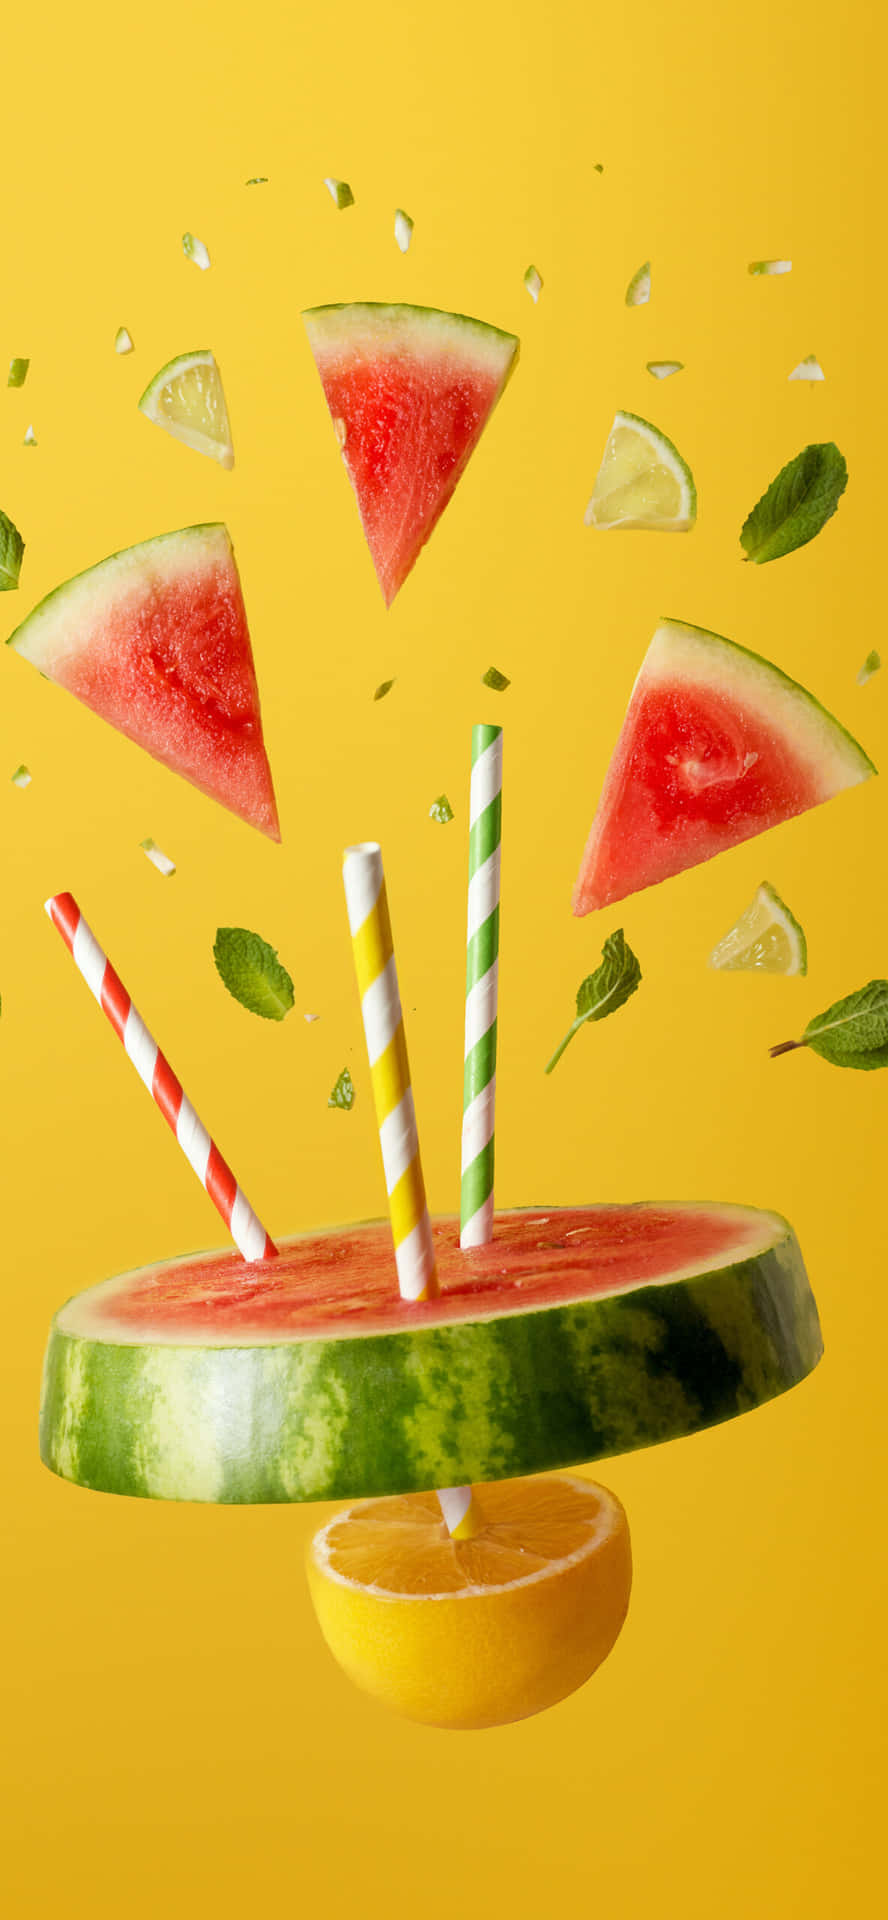 Nyd en vandmelon Iphone baggrund og pift dit skærmbillede op! Wallpaper